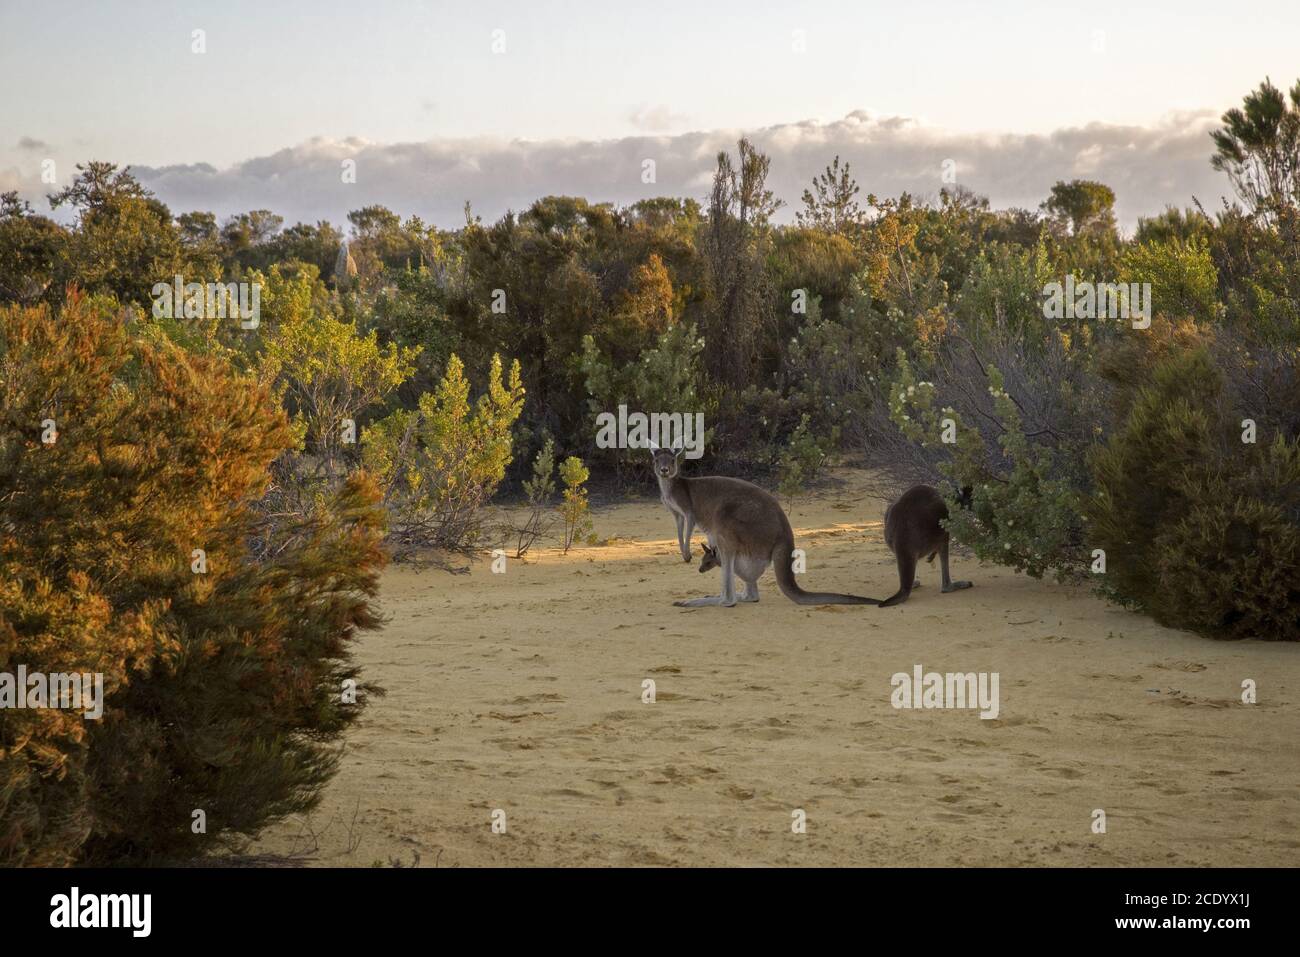 Red Kangaroo famille se nourrissant dans le Bush au crépuscule – Australie occidentale Banque D'Images